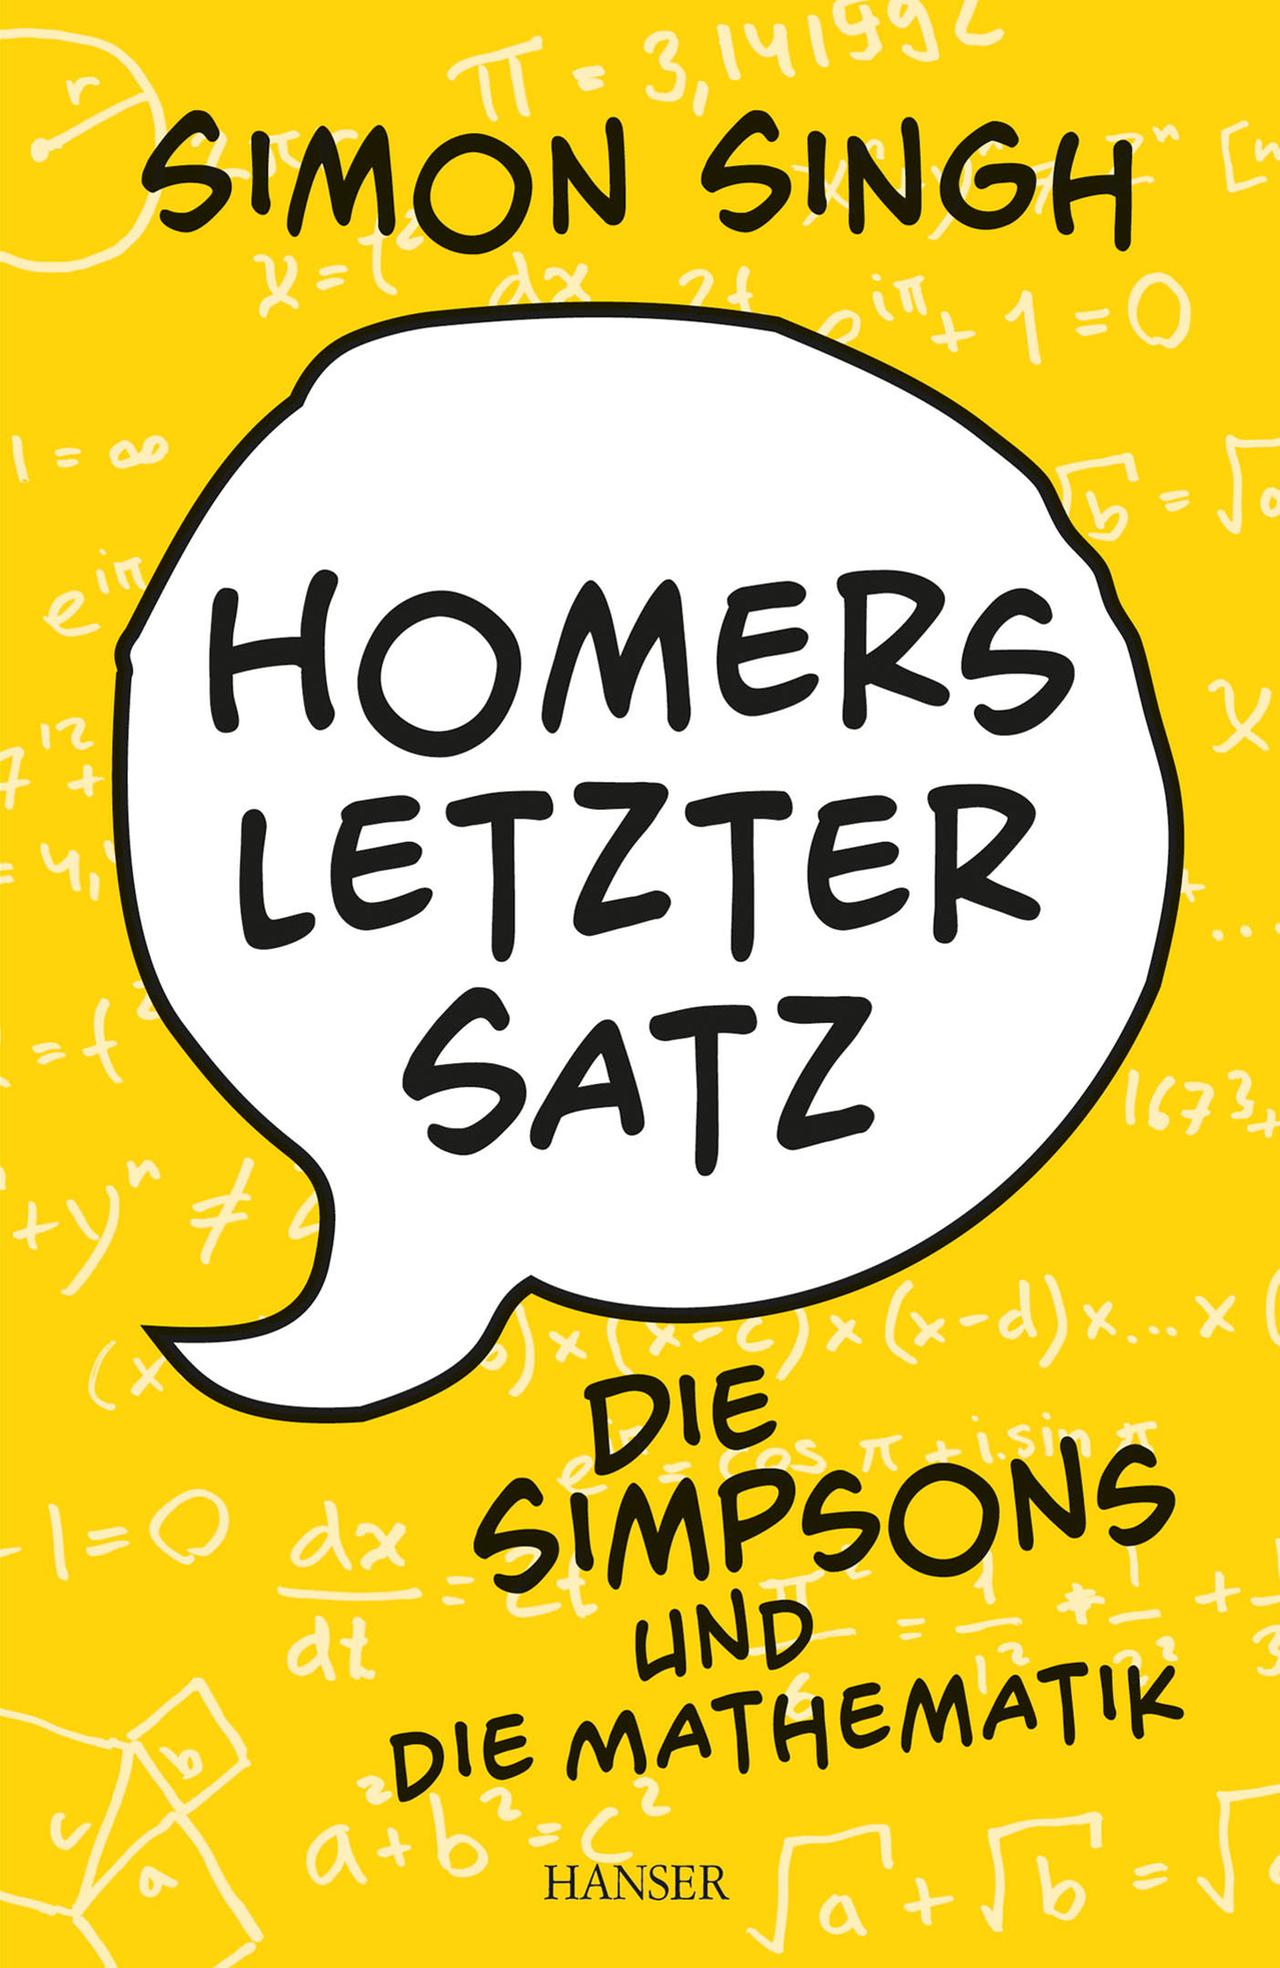 Homers letzter Satz - Die Simpsons und die Mathematik Autor: Simon Singh, übersetzt von Sigrid Schmid Hanser Verlag, 320 Seiten, 15,99 Euro ISBN 978-3-446-43773-9